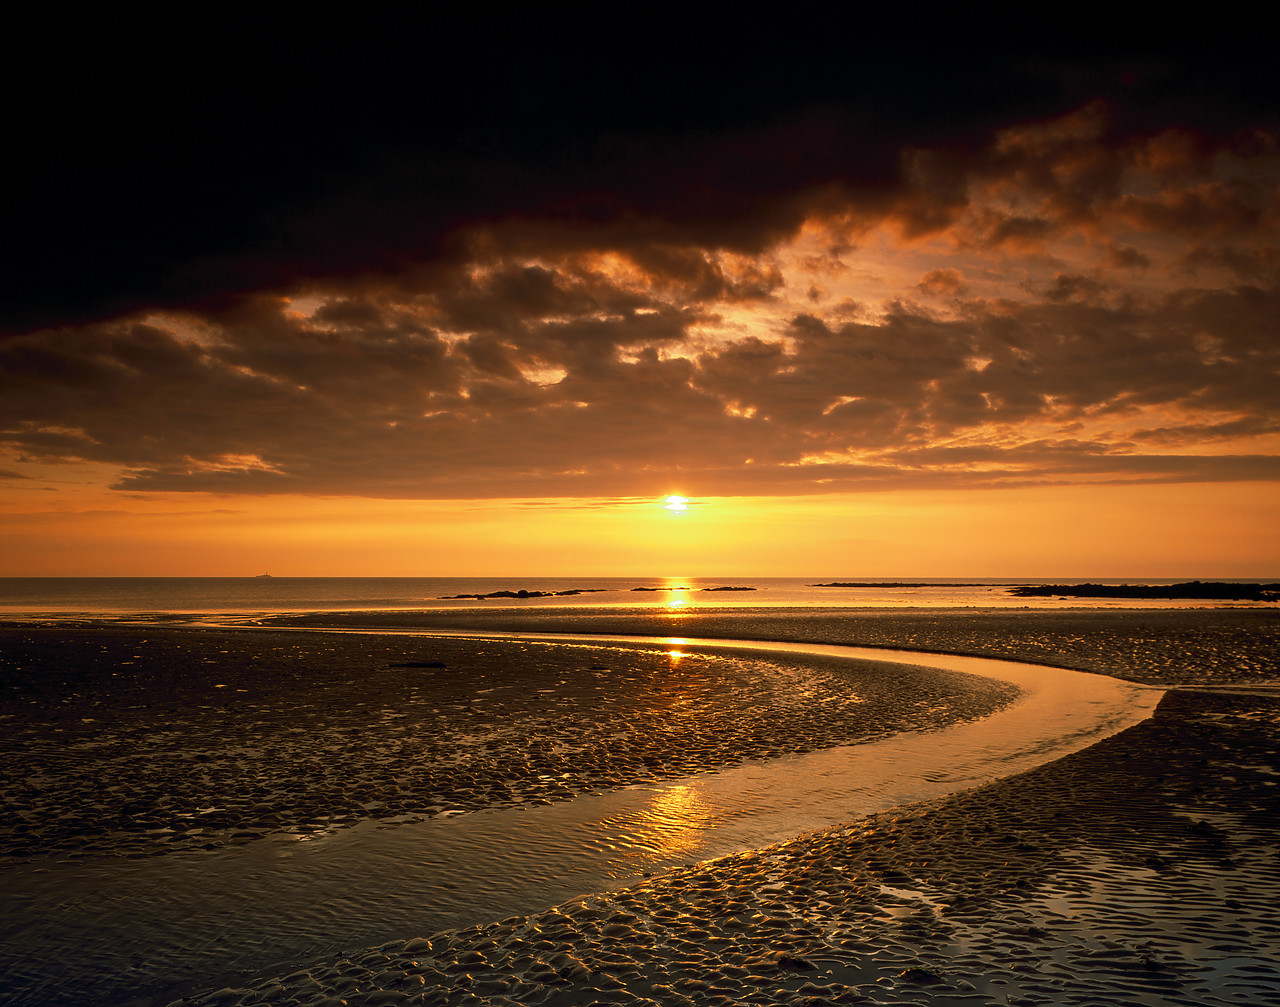 #030291-1 - Sunrise over Rush Beach, Co. Dublin, Ireland